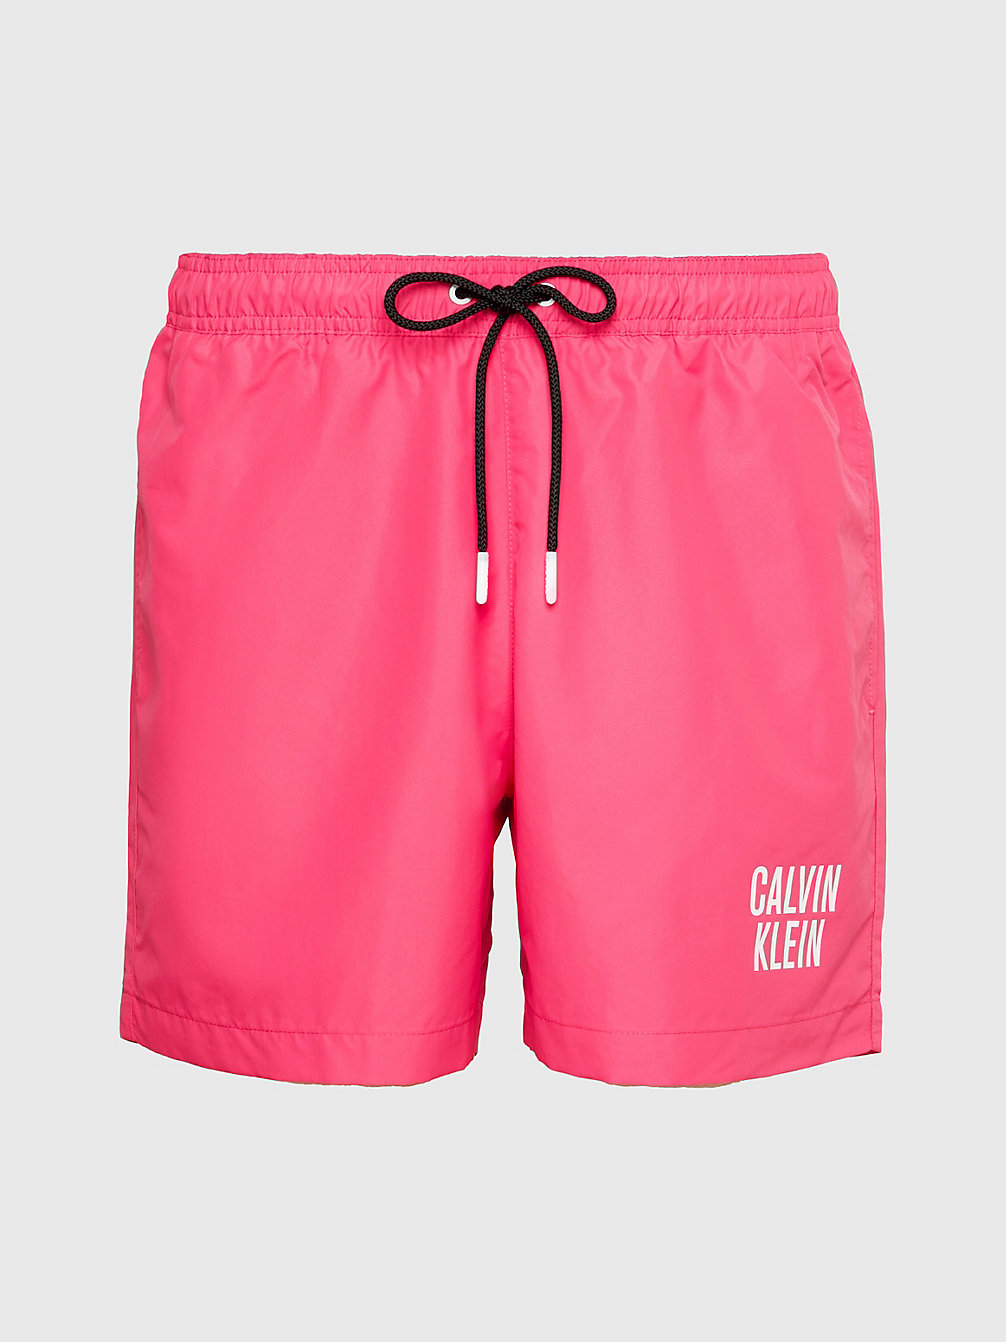 PINK FLASH > Zwemshort Met Dubbele Tailleband - Intense Power > undefined heren - Calvin Klein